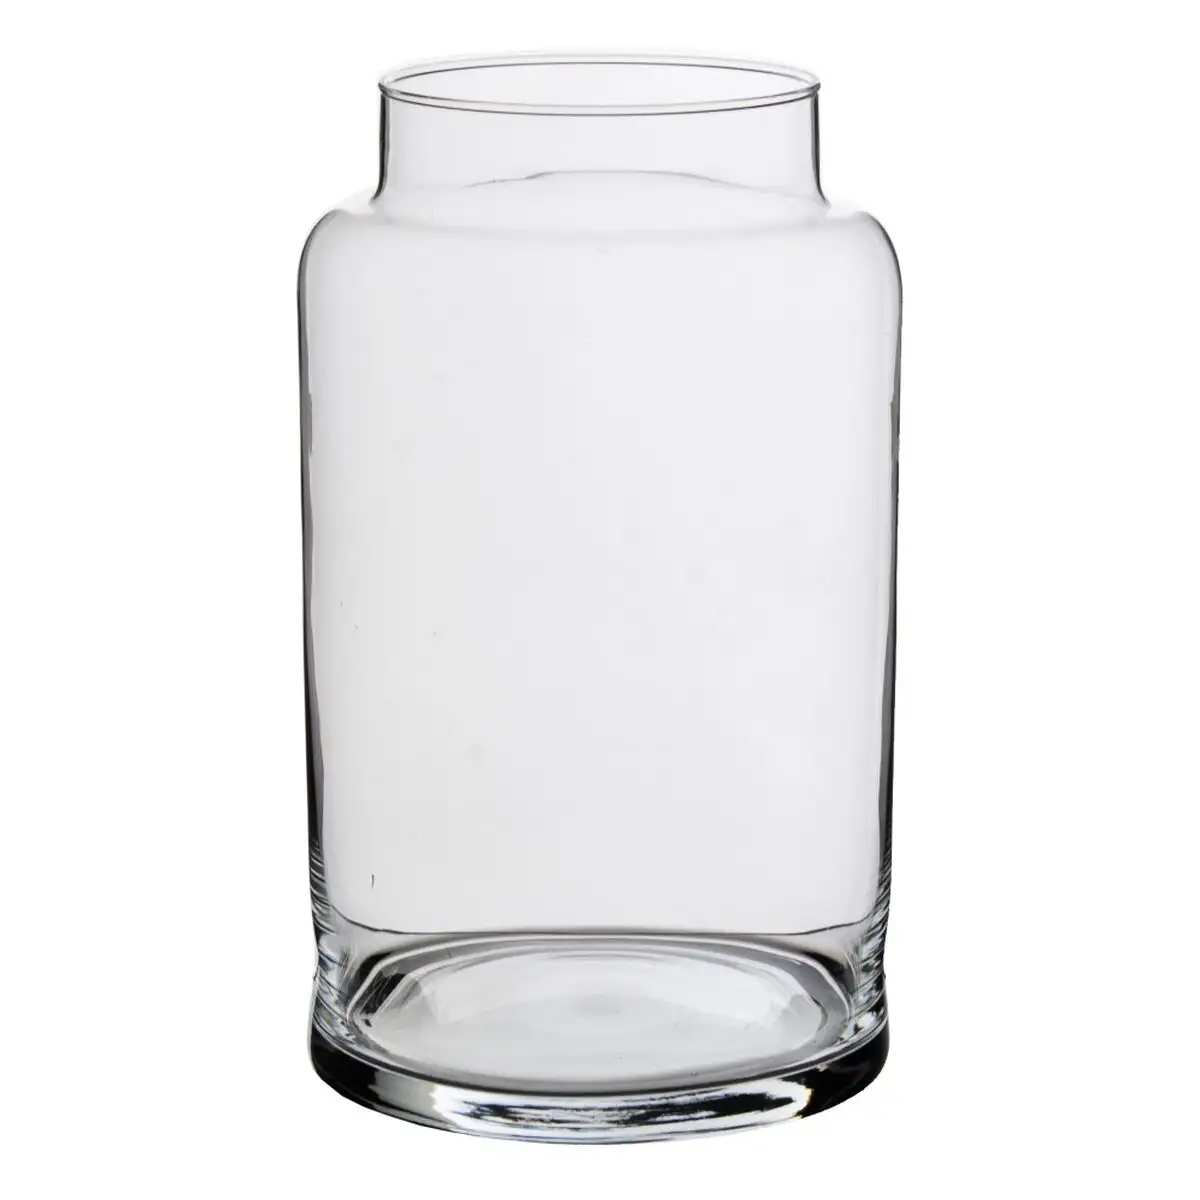 Vase cristal transparent 17 x 17 x 30 cm_5418. DIAYTAR SENEGAL - Là où Chaque Produit Est une Trouvaille. Parcourez notre catalogue diversifié et découvrez des articles qui enrichiront votre quotidien, du pratique à l'insolite.